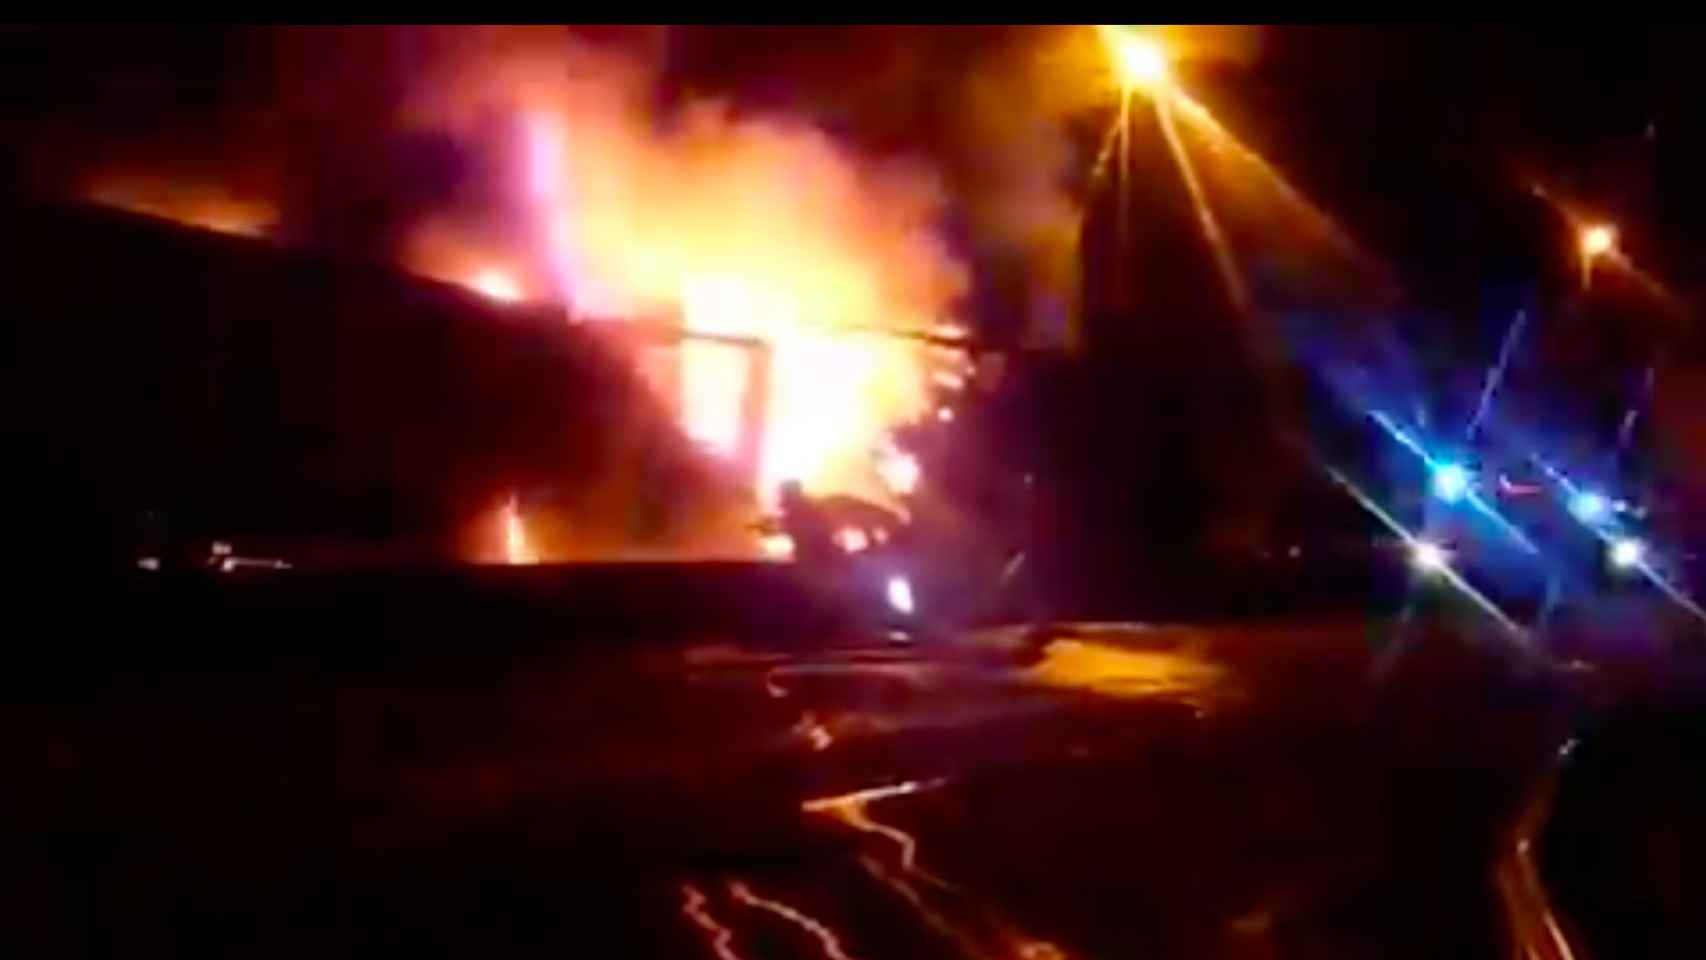 Aparatoso incendio generado tras el accidente en Sant Boi de Llobregat